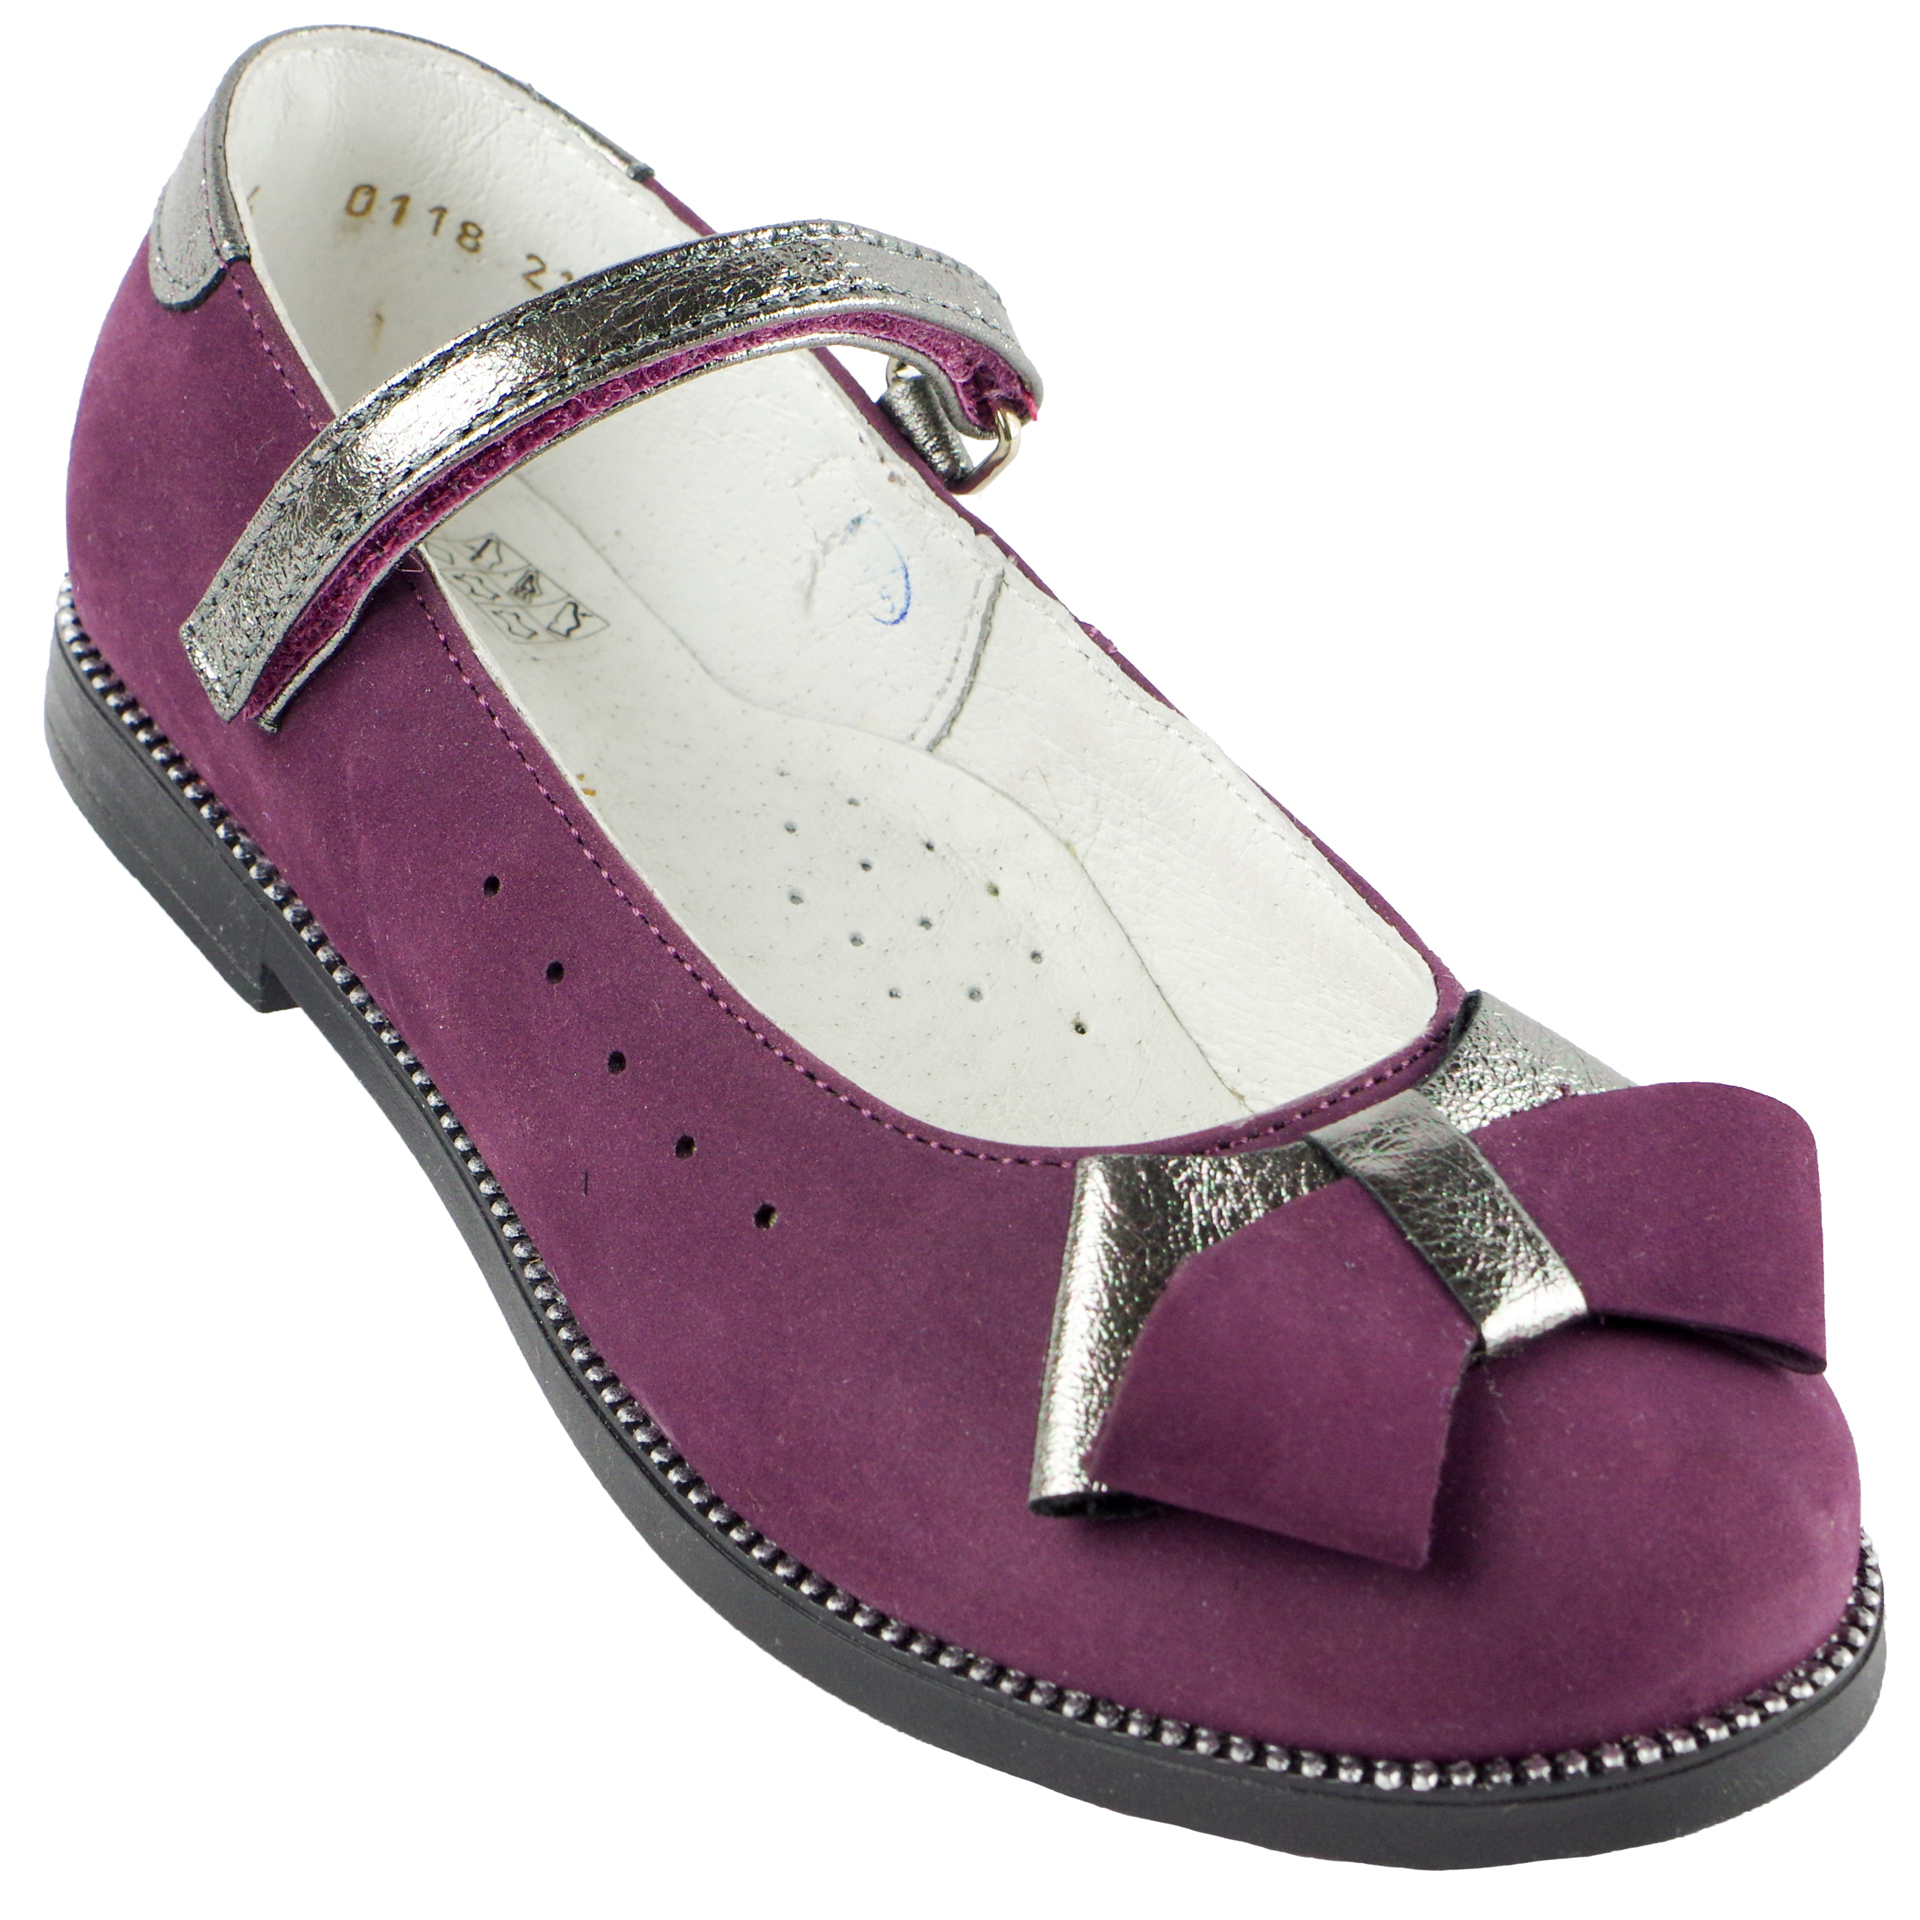 Туфли детские (1384) материал Нубук, цвет Фиолетовый  для девочки 27-31 размеры – Sole Kids